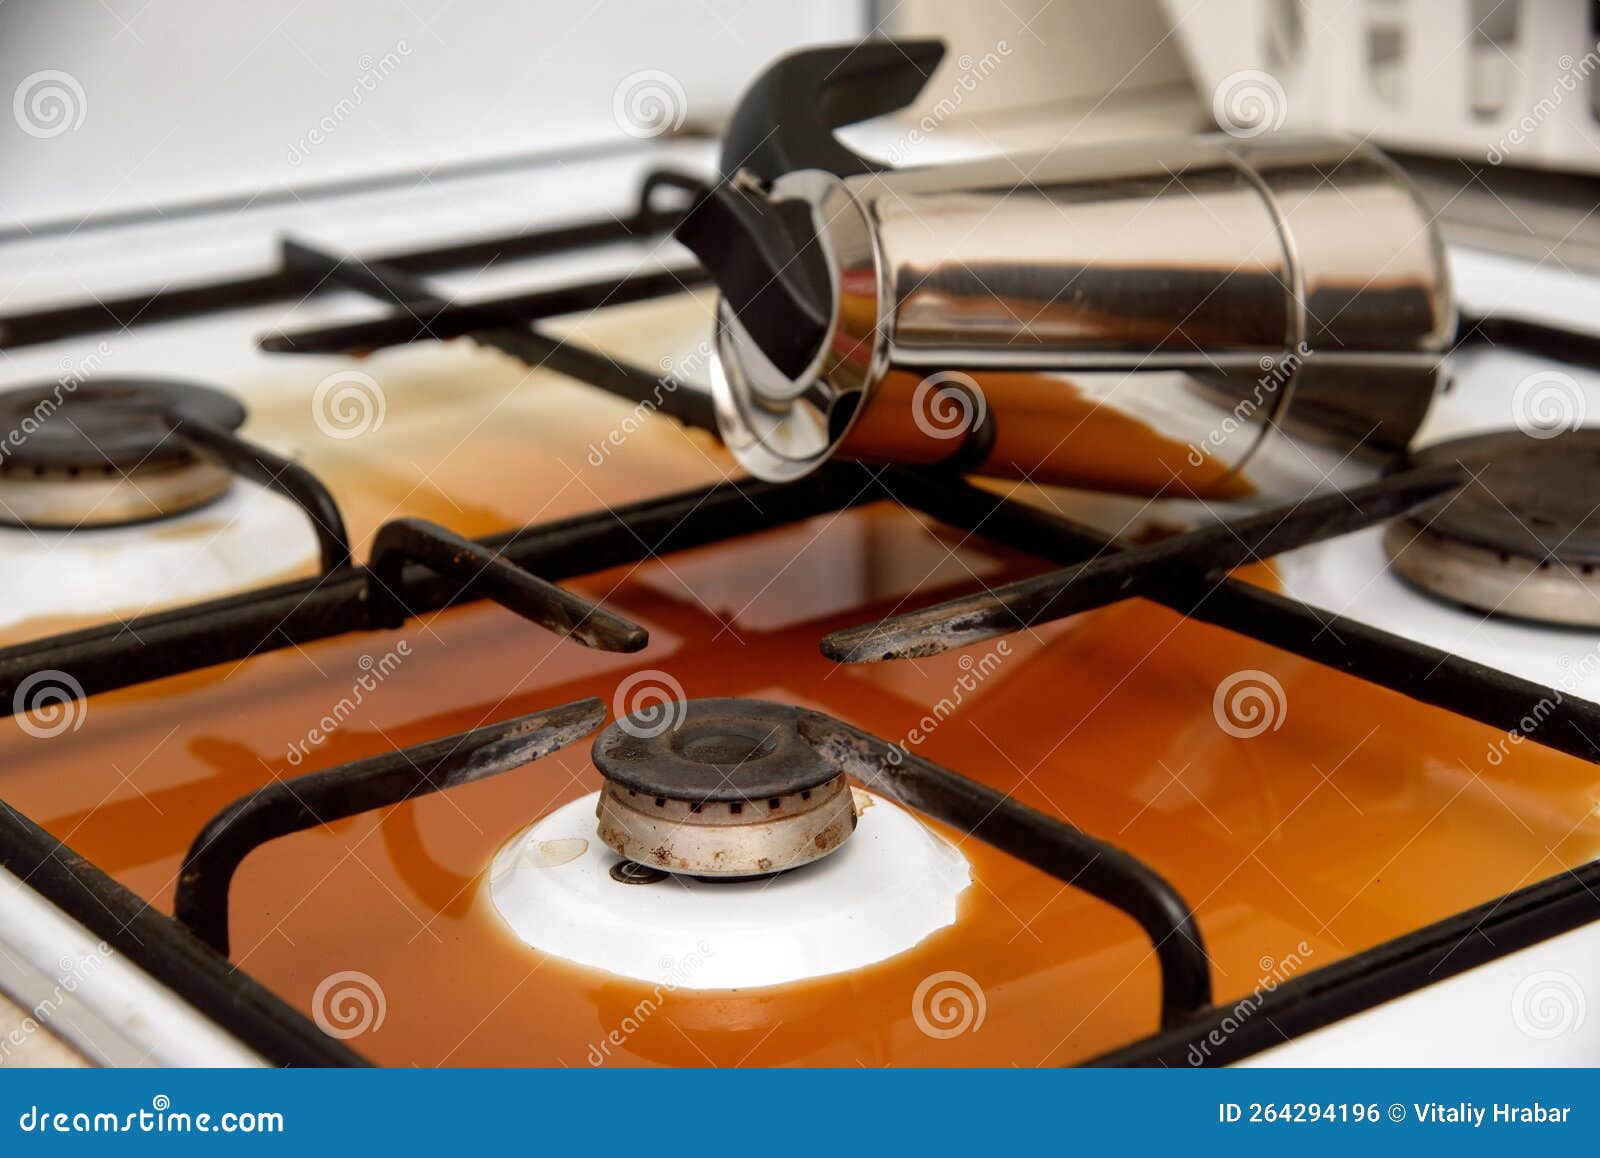 Quemadores de gas en una estufa de gas de cocina